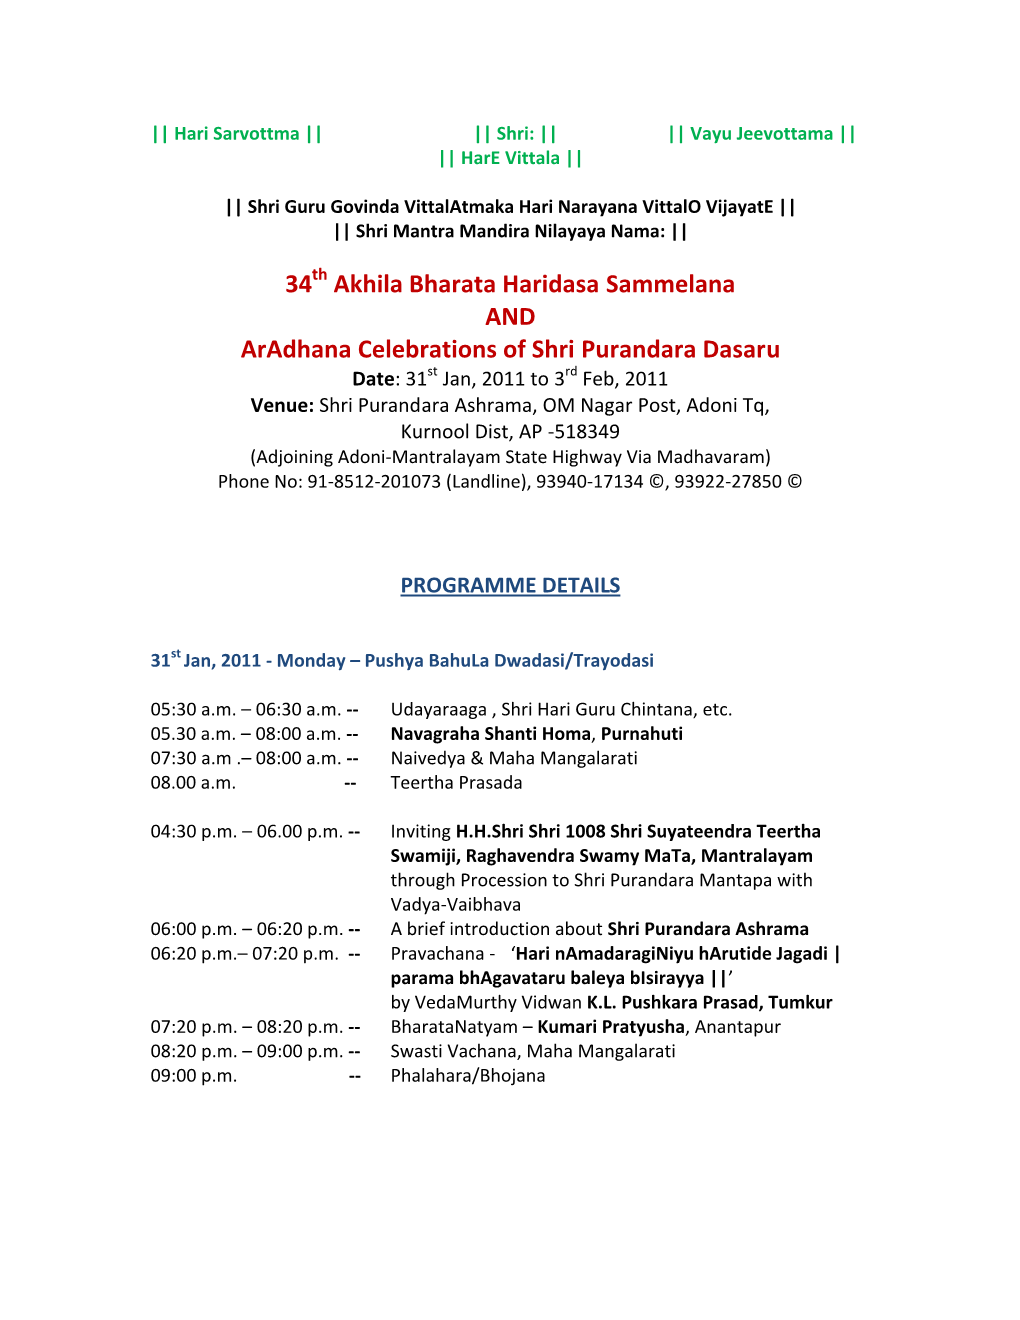 34Th Akhila Bharata Haridasa Sammelana and Aradhana Celebrations of Shri Purandara Dasaru